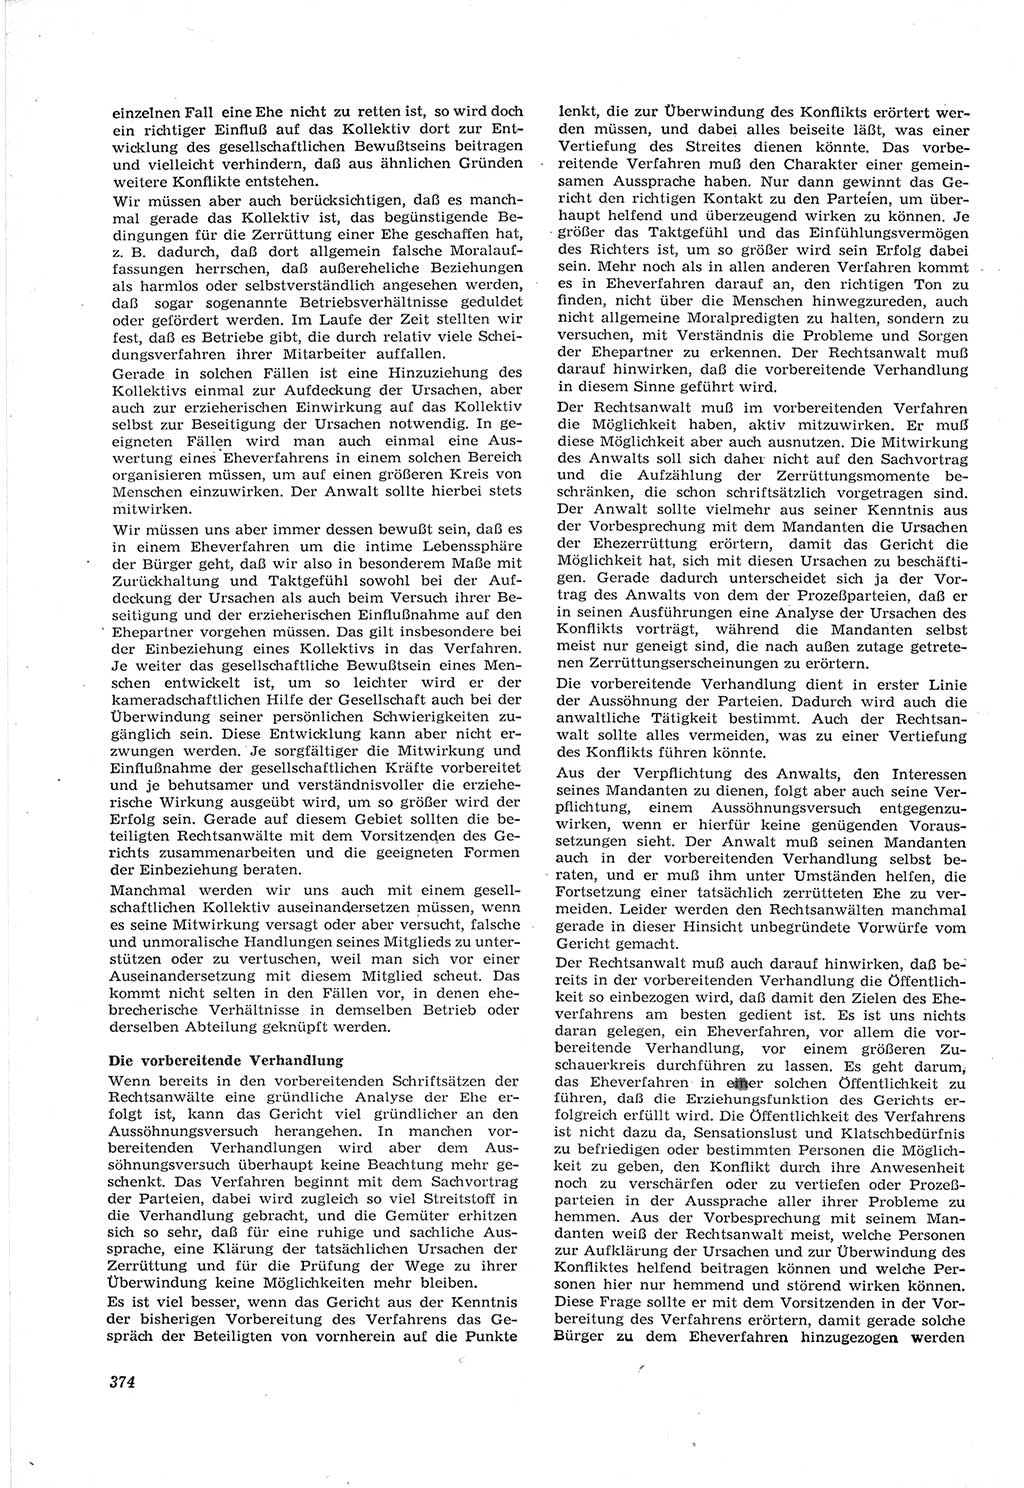 Neue Justiz (NJ), Zeitschrift für Recht und Rechtswissenschaft [Deutsche Demokratische Republik (DDR)], 17. Jahrgang 1963, Seite 374 (NJ DDR 1963, S. 374)